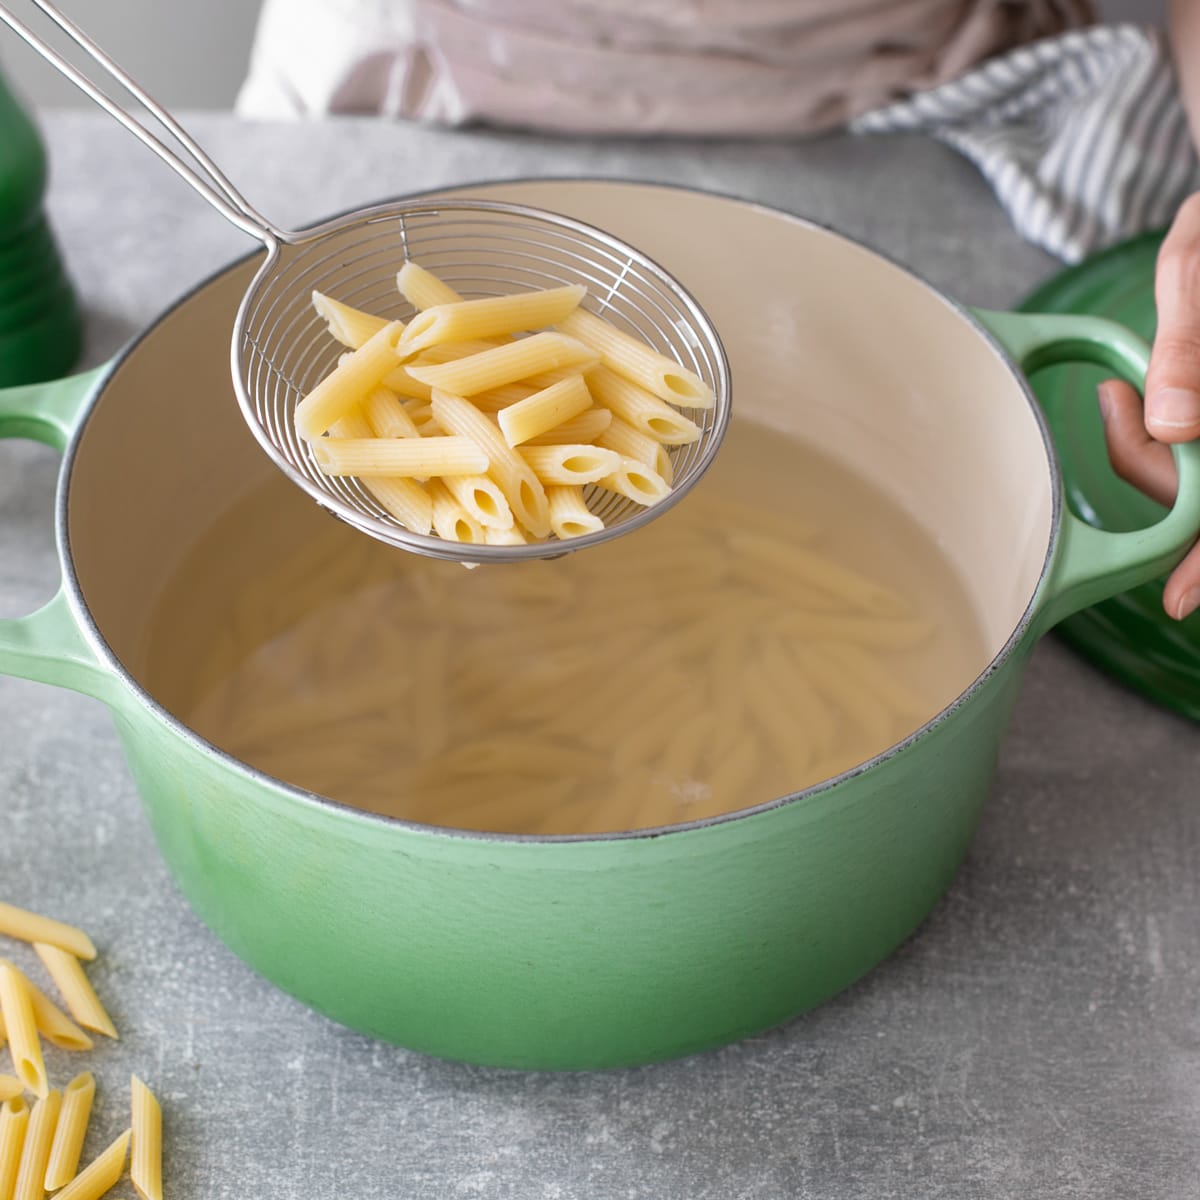 How To Cook Pasta “Al Dente”